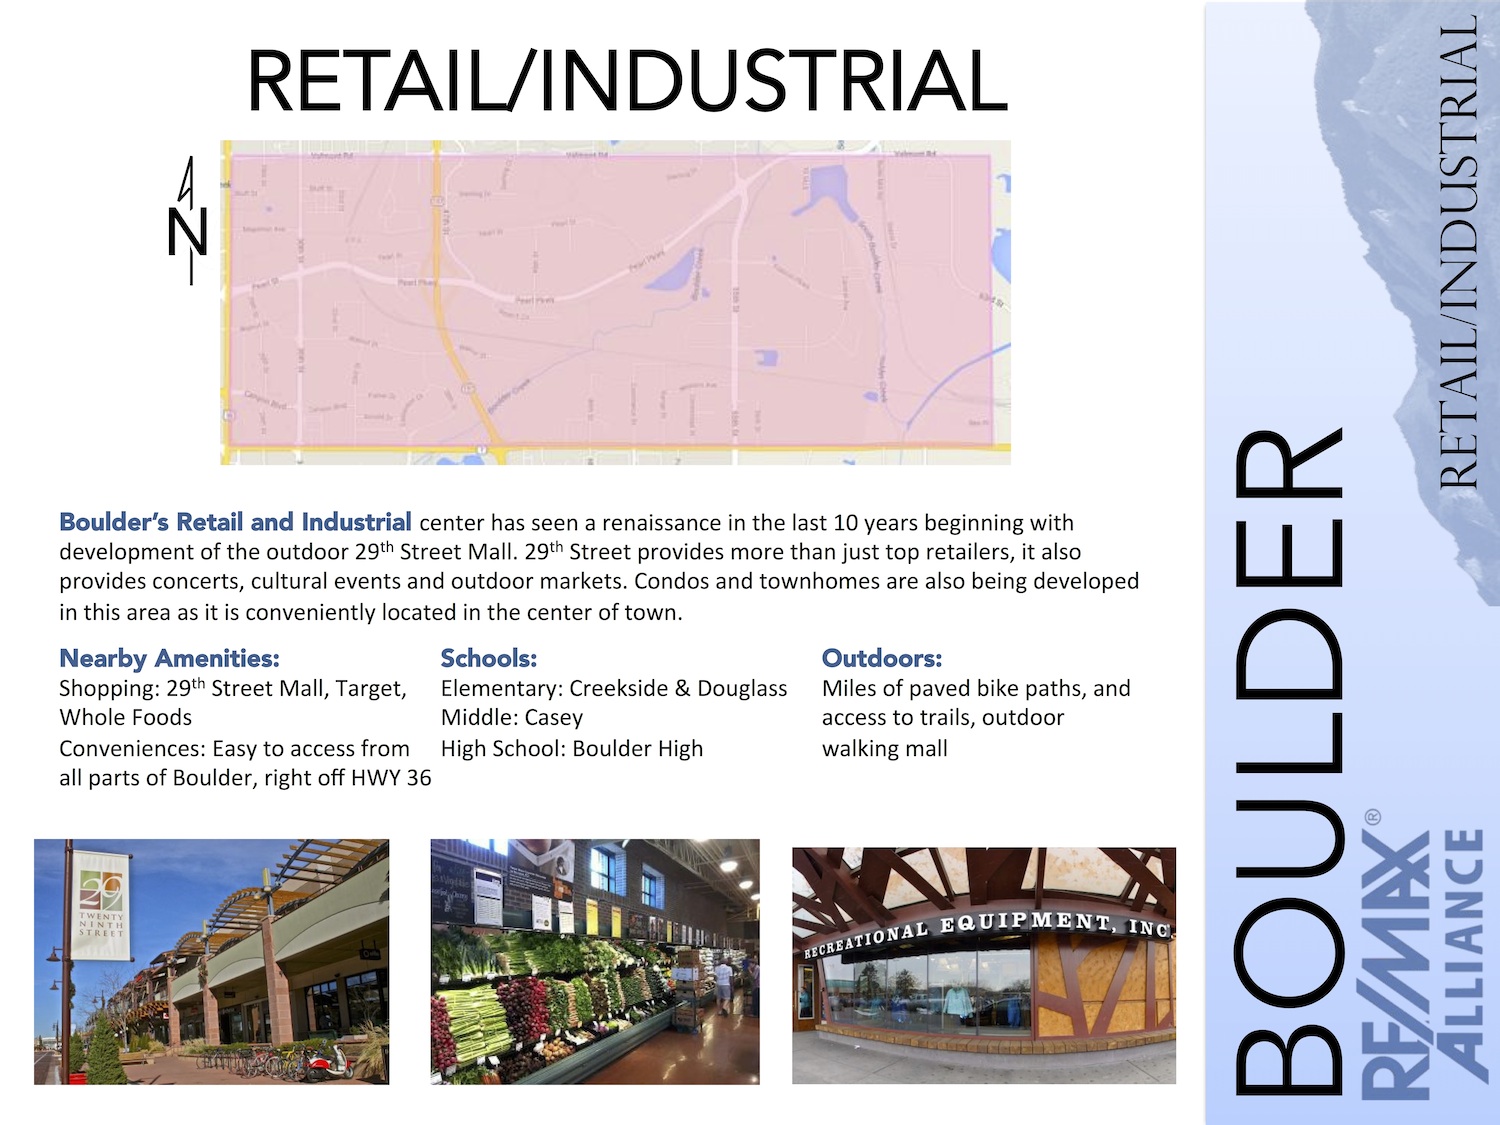 Retail/Industrial, Colorado